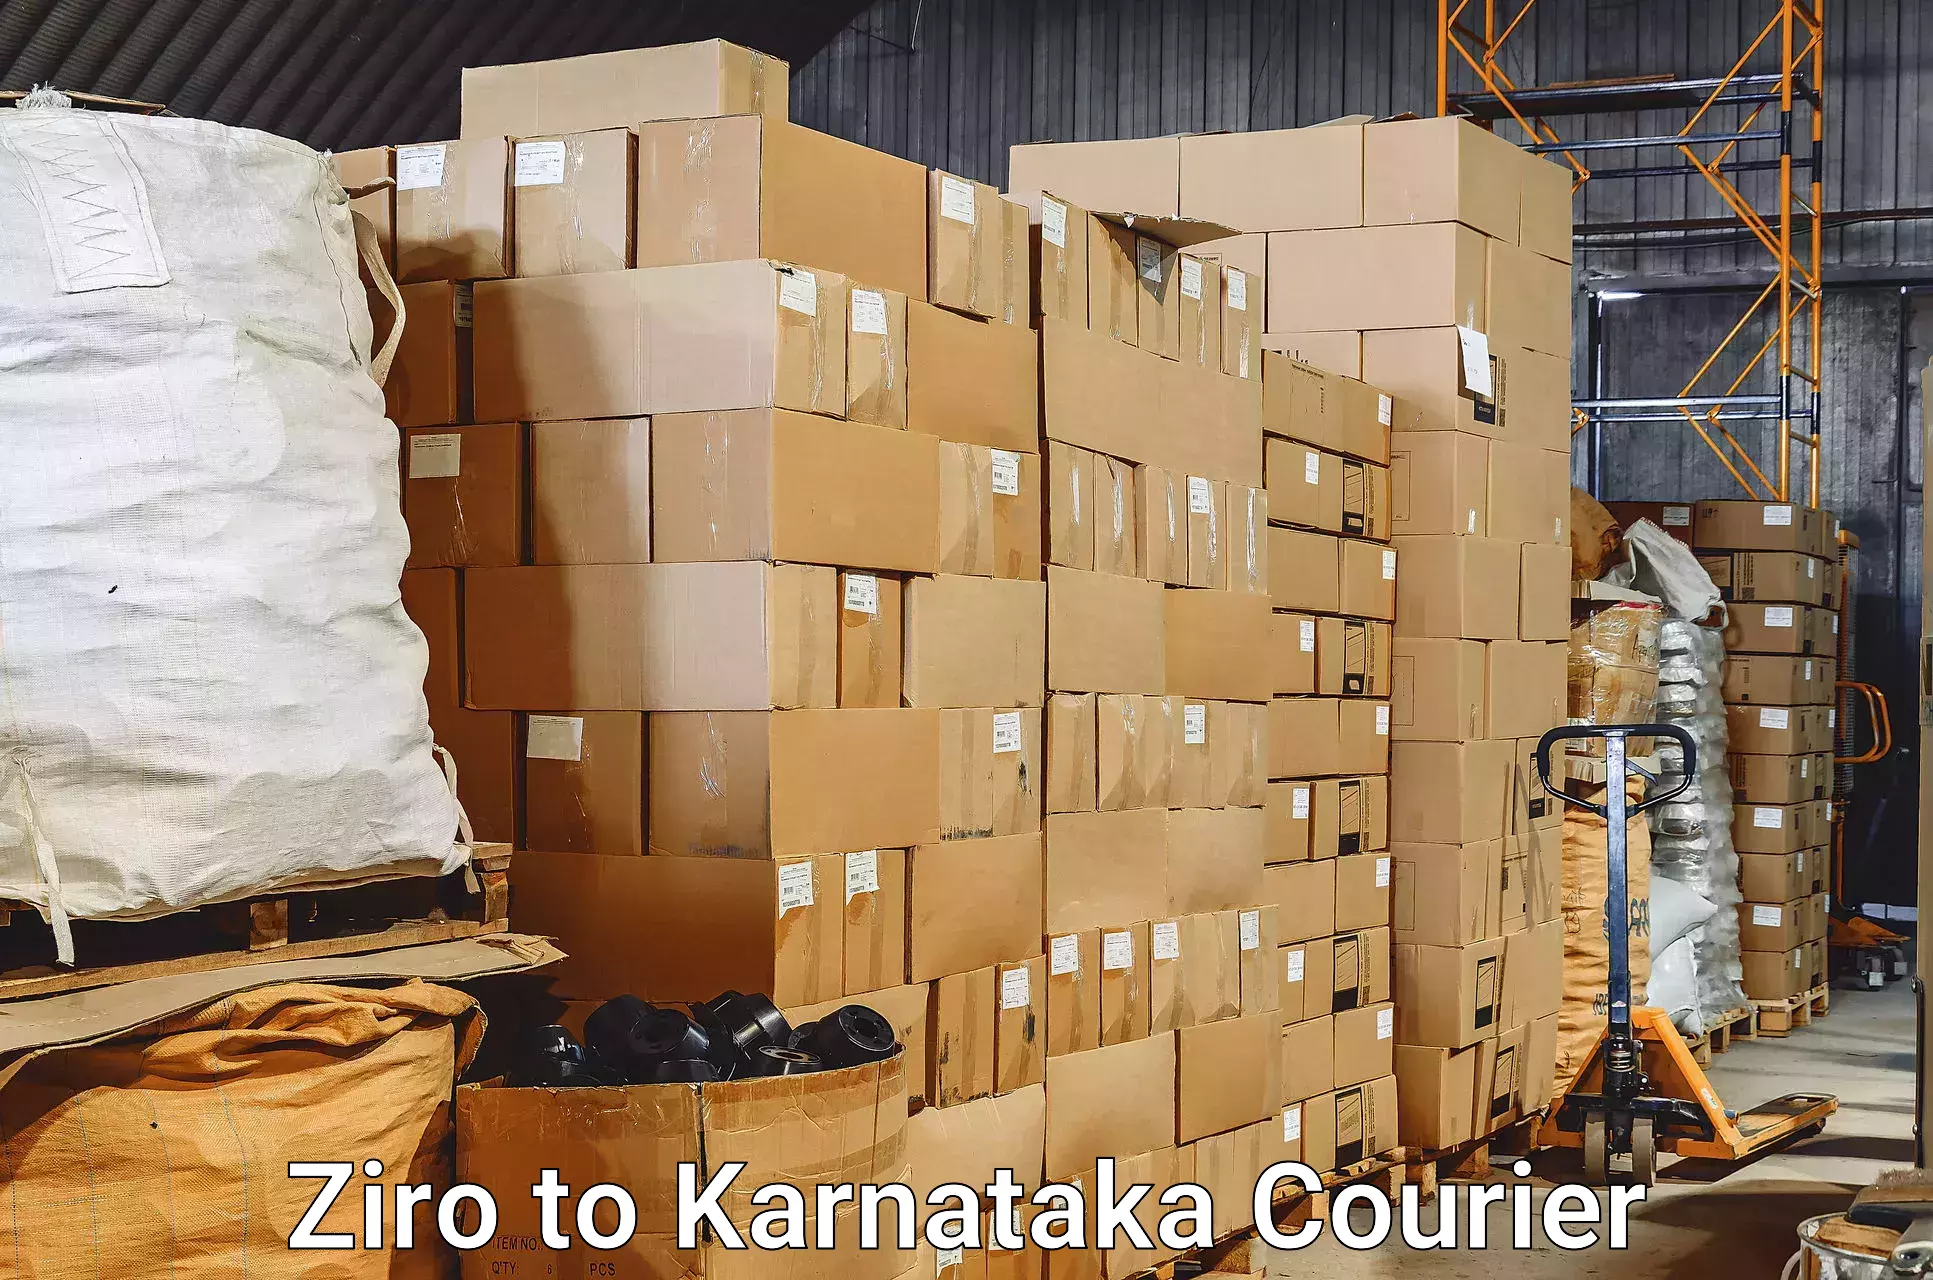 Baggage transport network Ziro to Kanjarakatte